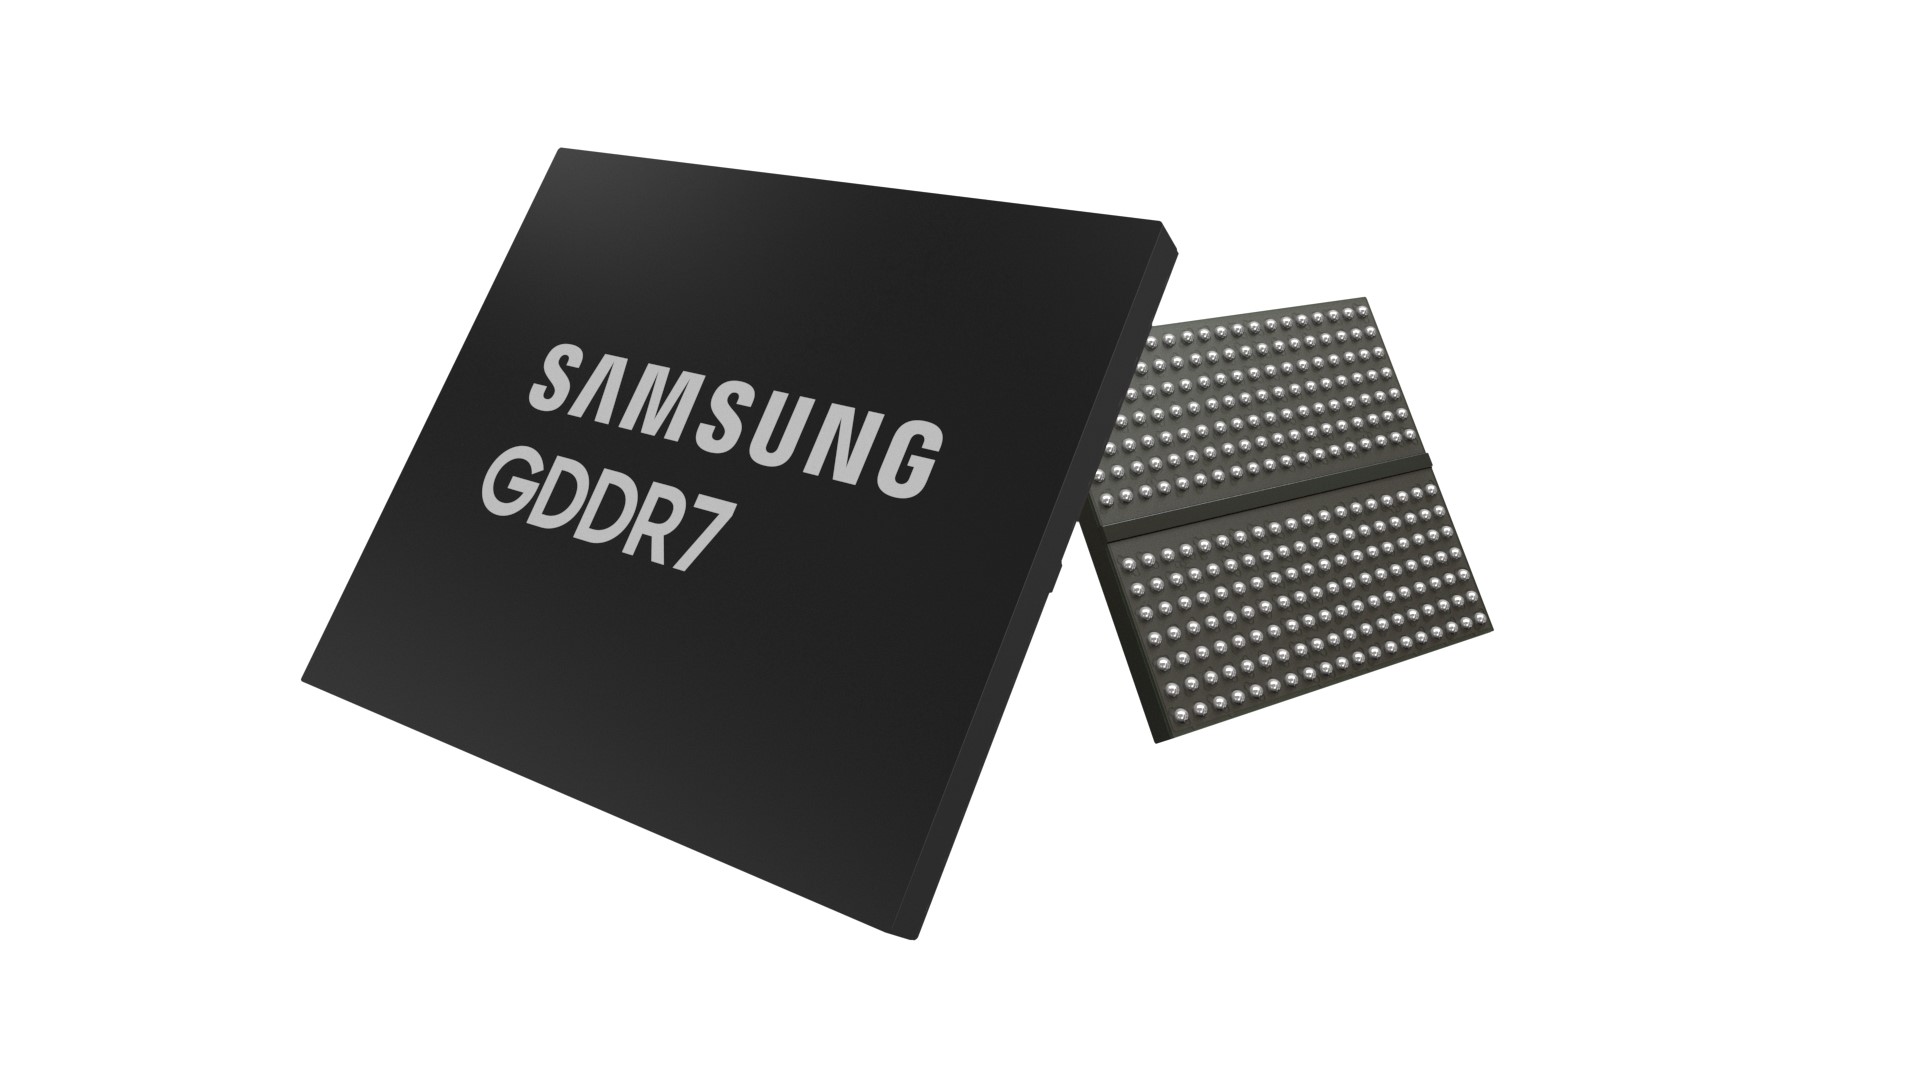 Immagine pubblicata in relazione al seguente contenuto: Samsung completa lo sviluppo dei primi chip di memoria grafica GDDR7 | Nome immagine: news34680_Samsung_GDDR7_3.jpg